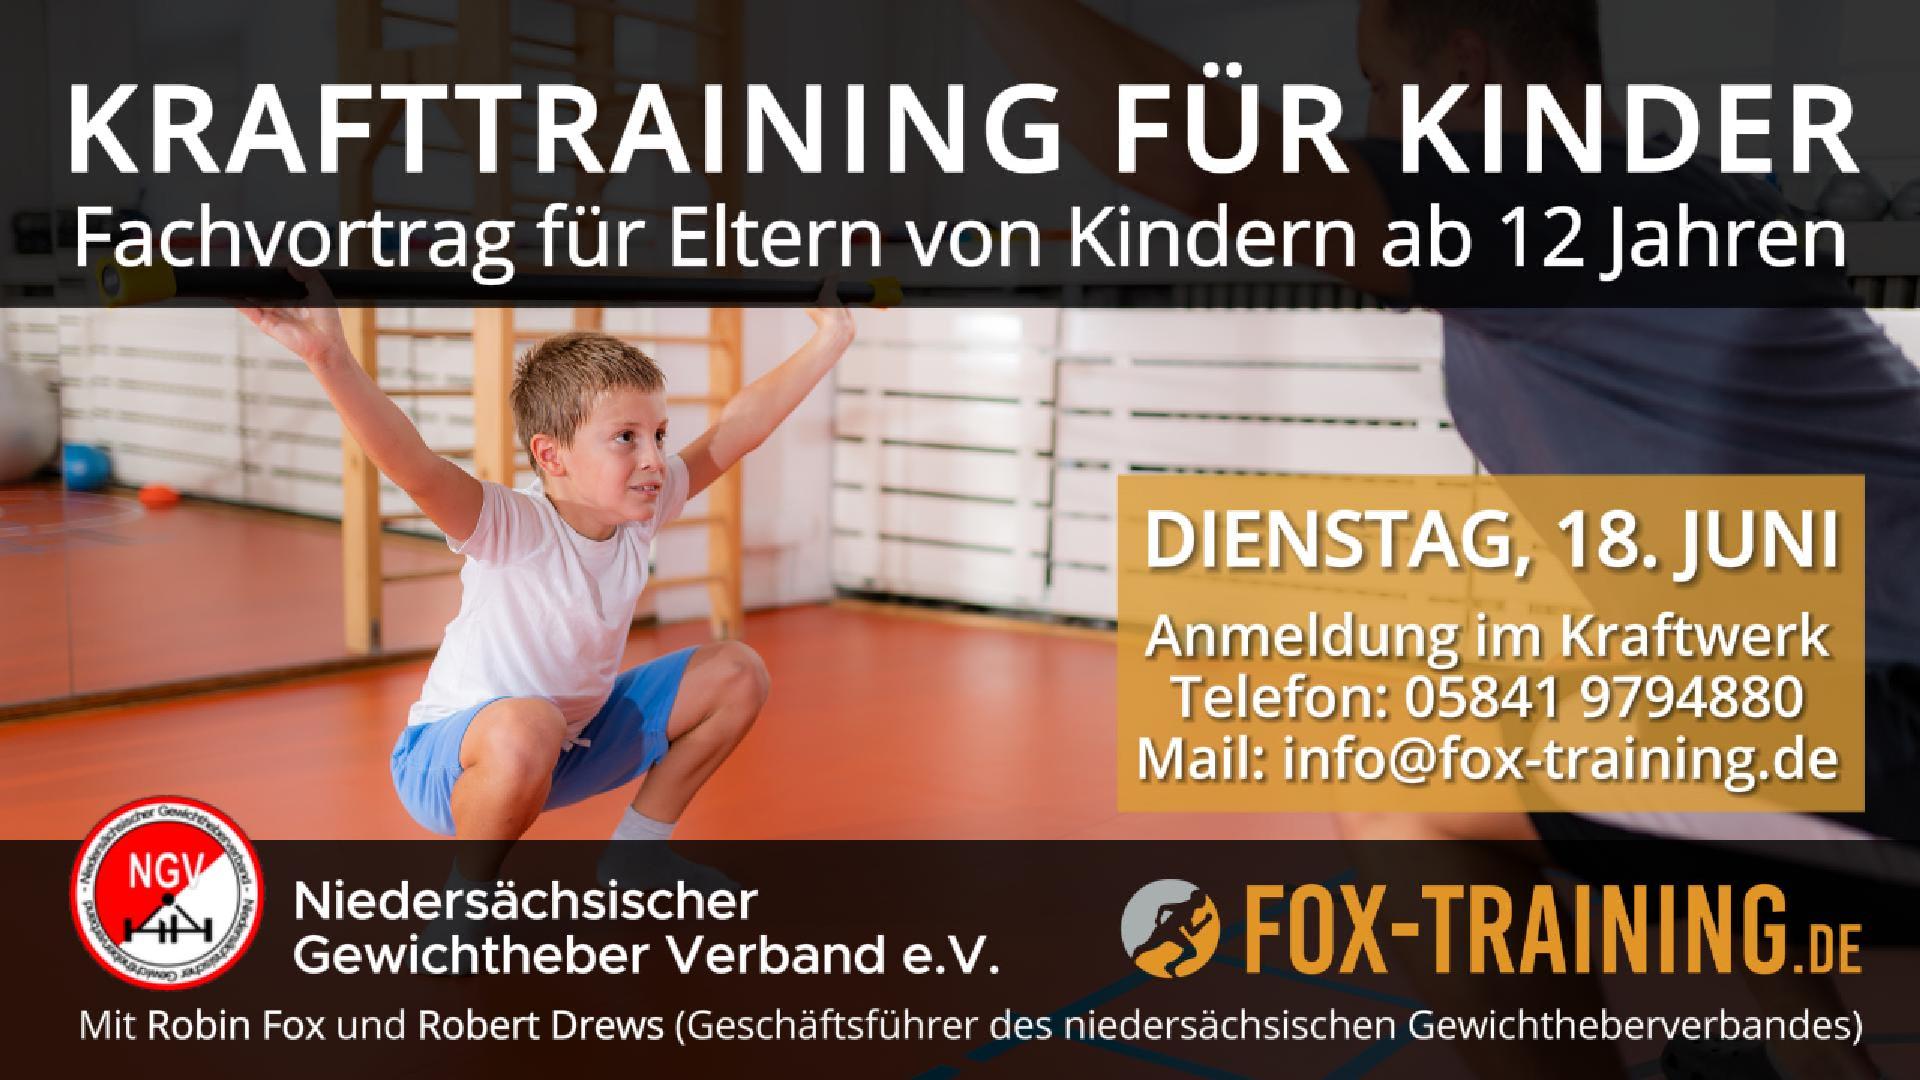 Krafttraining-fuer-Kinder-Fox-Training-Kraftwerk-Luechow-Gewichtherverband